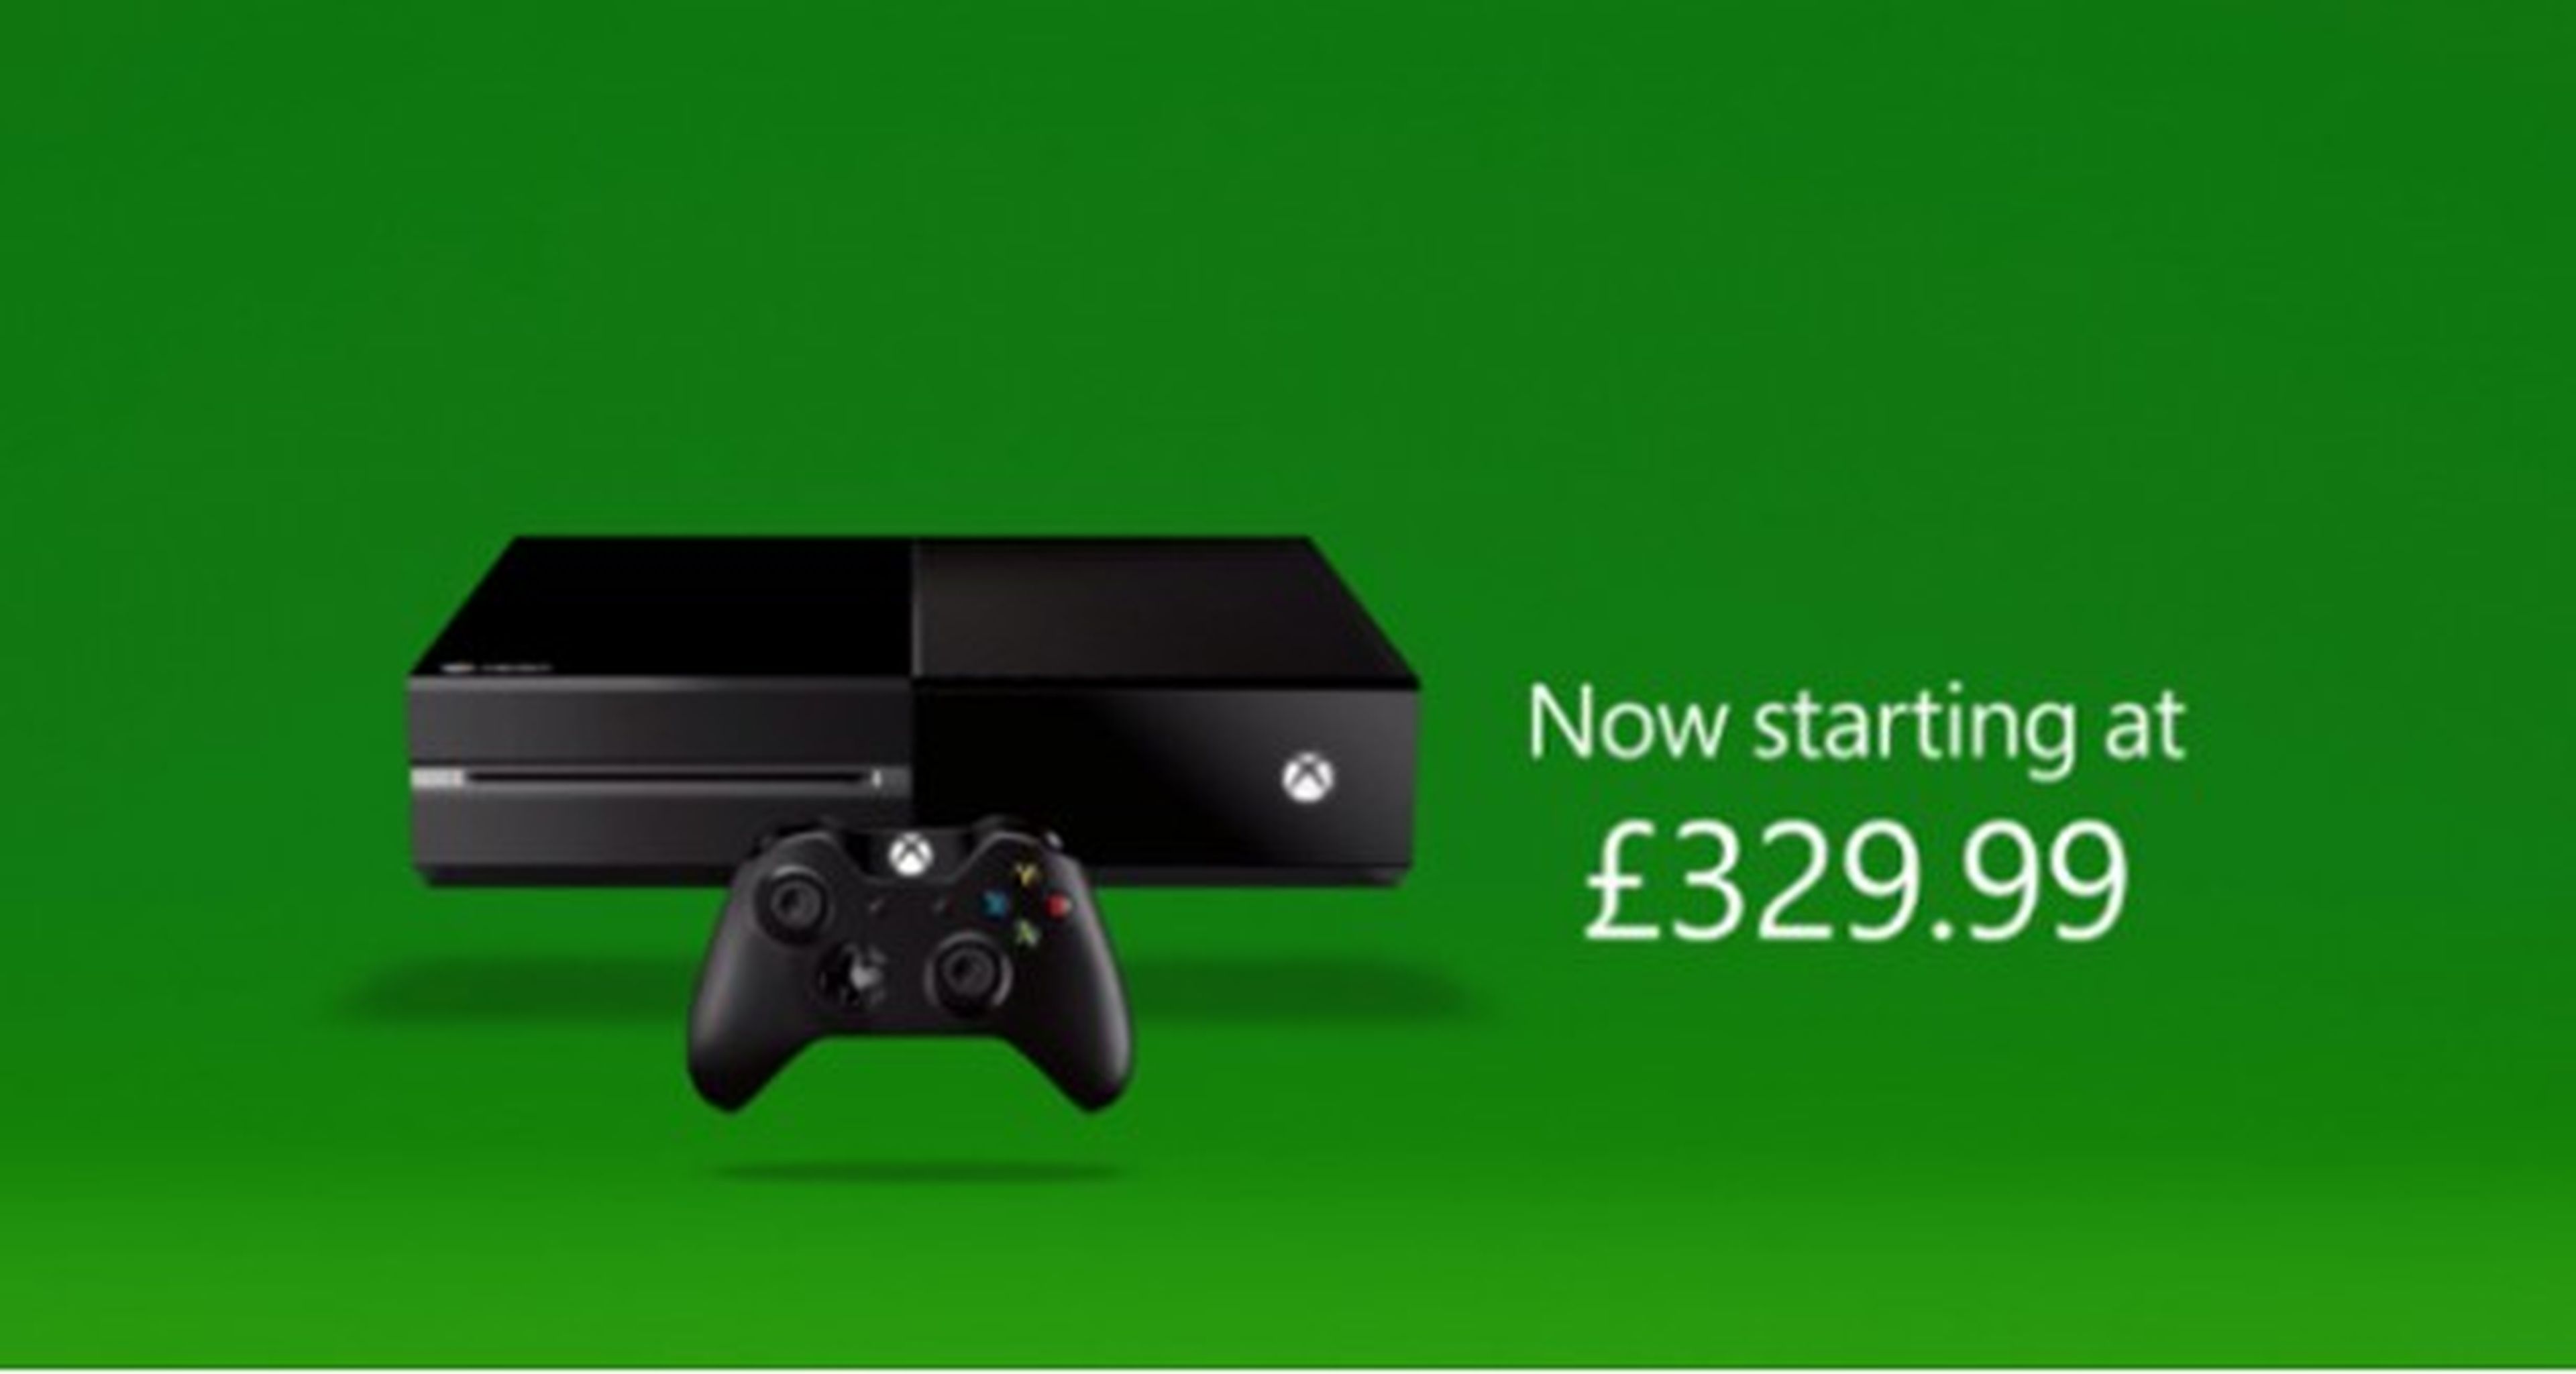 Xbox One podría superar en ventas semanales a PlayStation 4 en Reino Unido